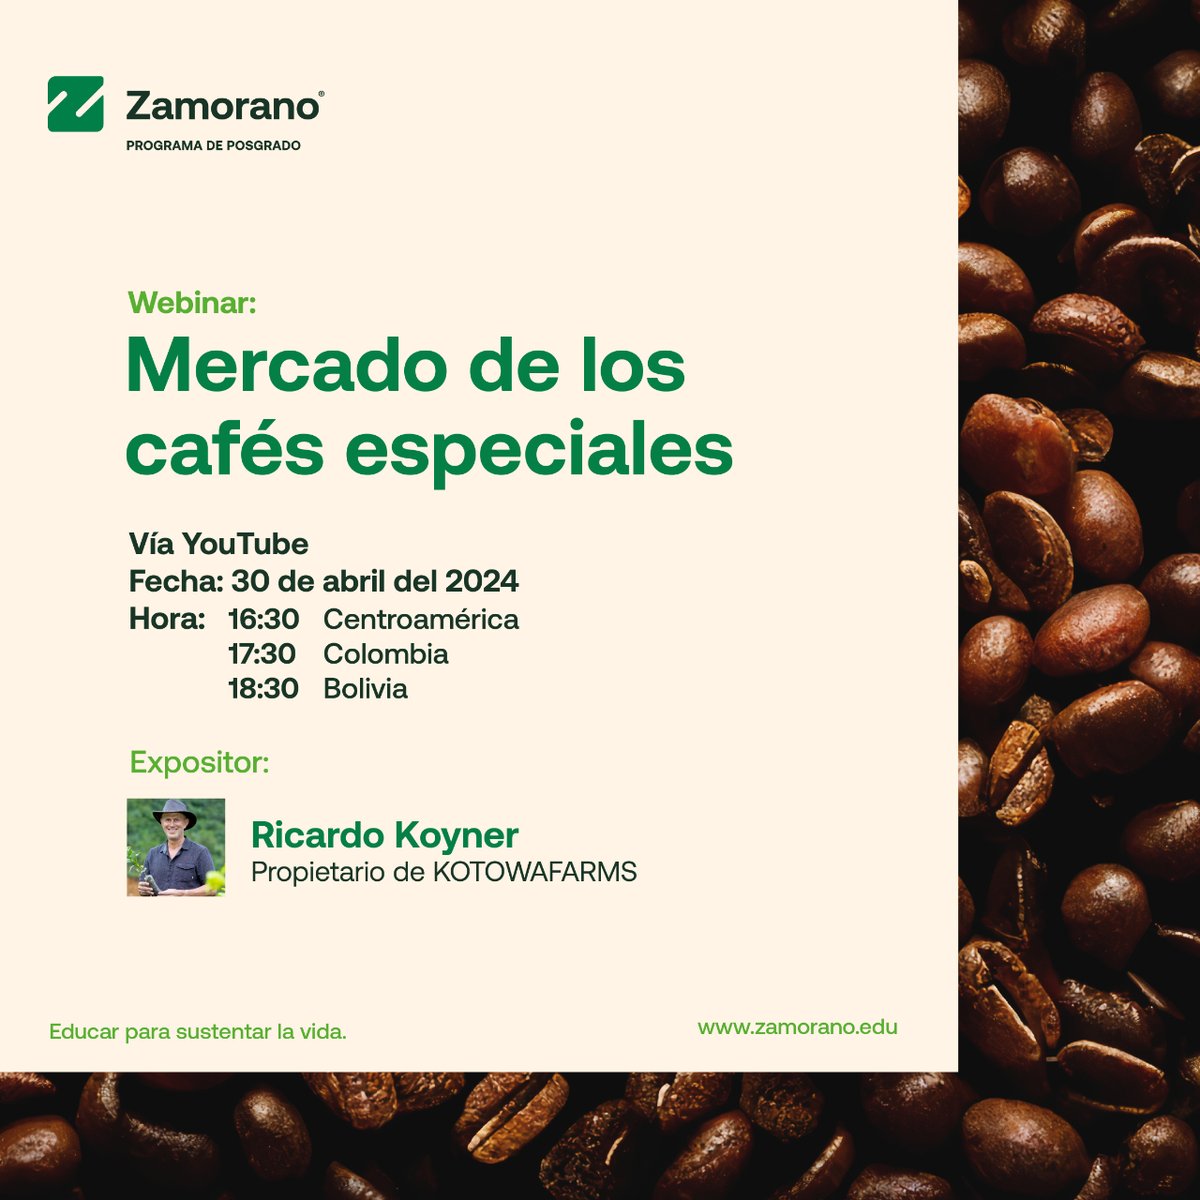 ☕ Amantes del café, ¡no se pierdan nuestro webinar con Ricardo Koyner! #AprendedelCafé con Zamorano. 📆 30/04, ⏰ 16:30 CA. ¡Apuntate aquí! 👉 lc.cx/GOLYtg
#zamorano #webinar #mercadodelcafé #aprendeconzamorano #aprendizaje